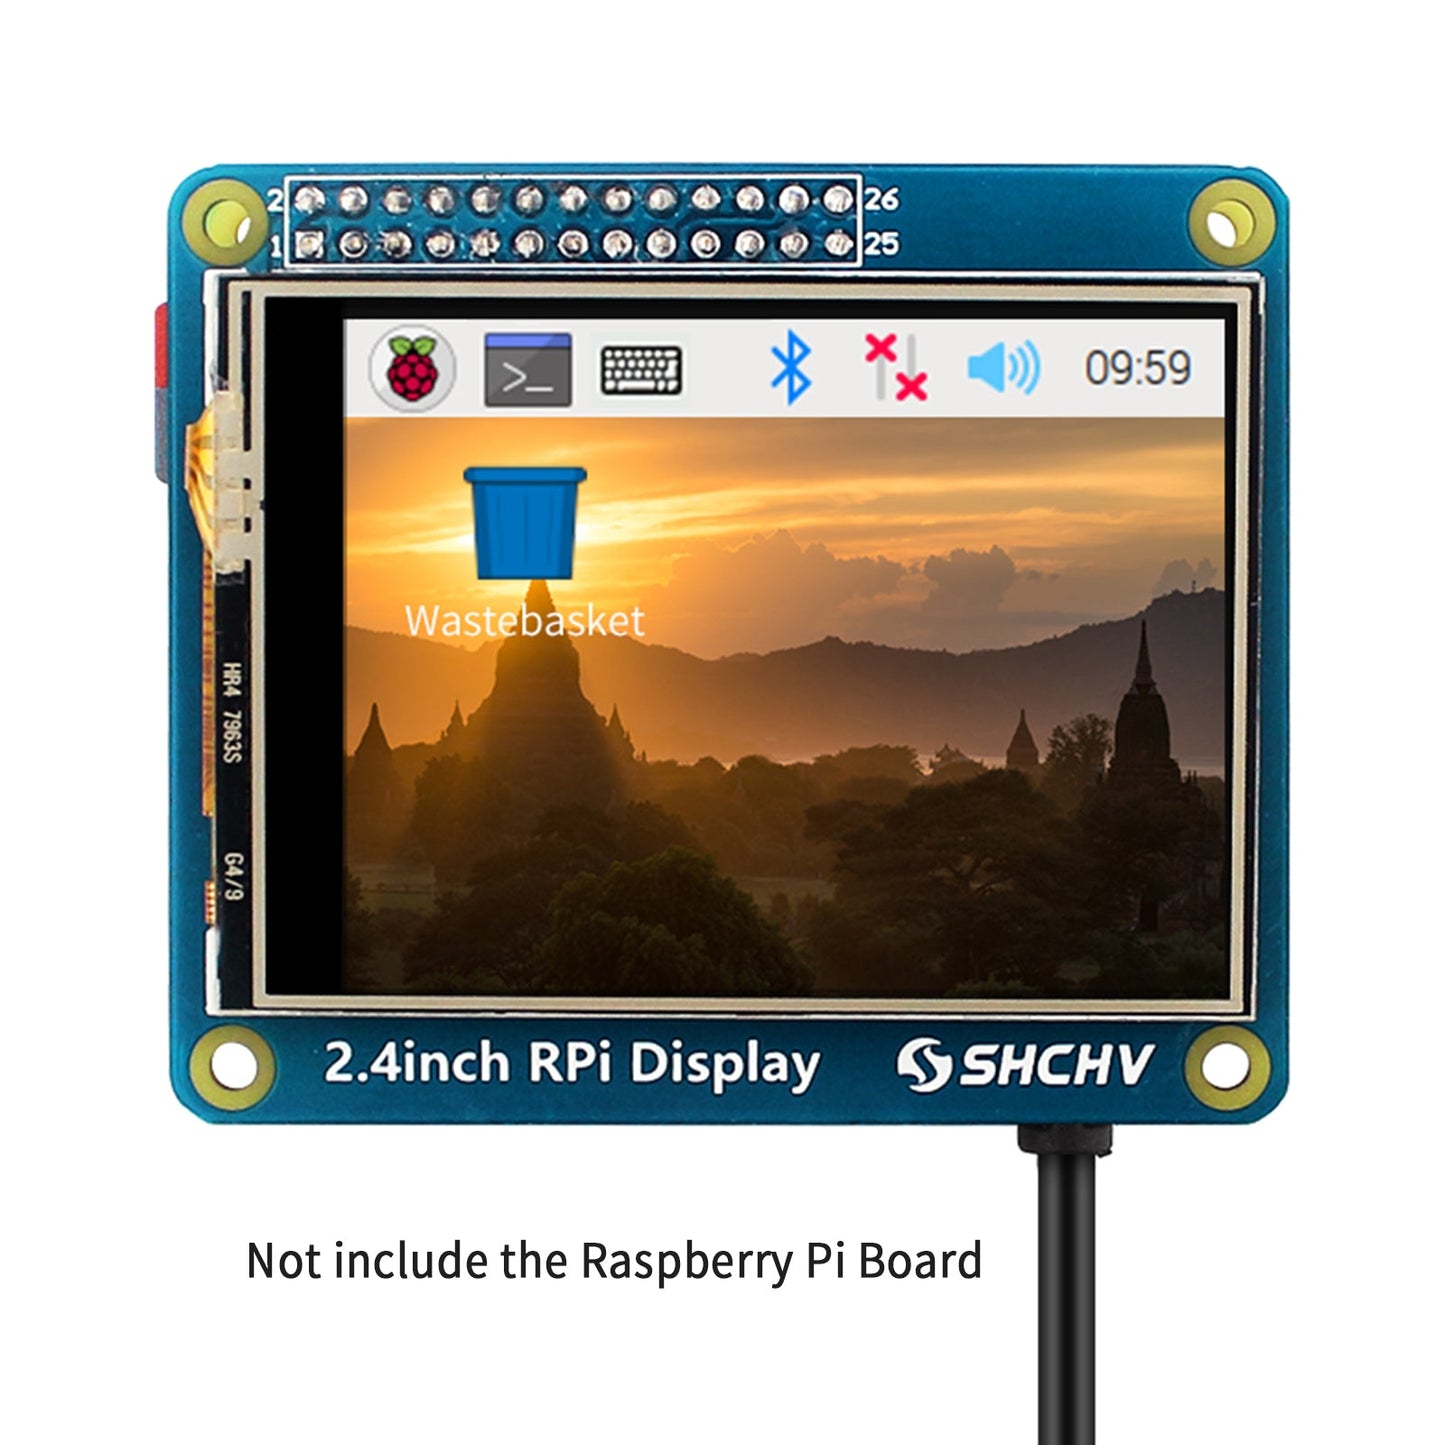 Écran LED 2,4 pouces 320*240 Pixels adapté pour Raspberry Pi 4B 3B + Zero 2W